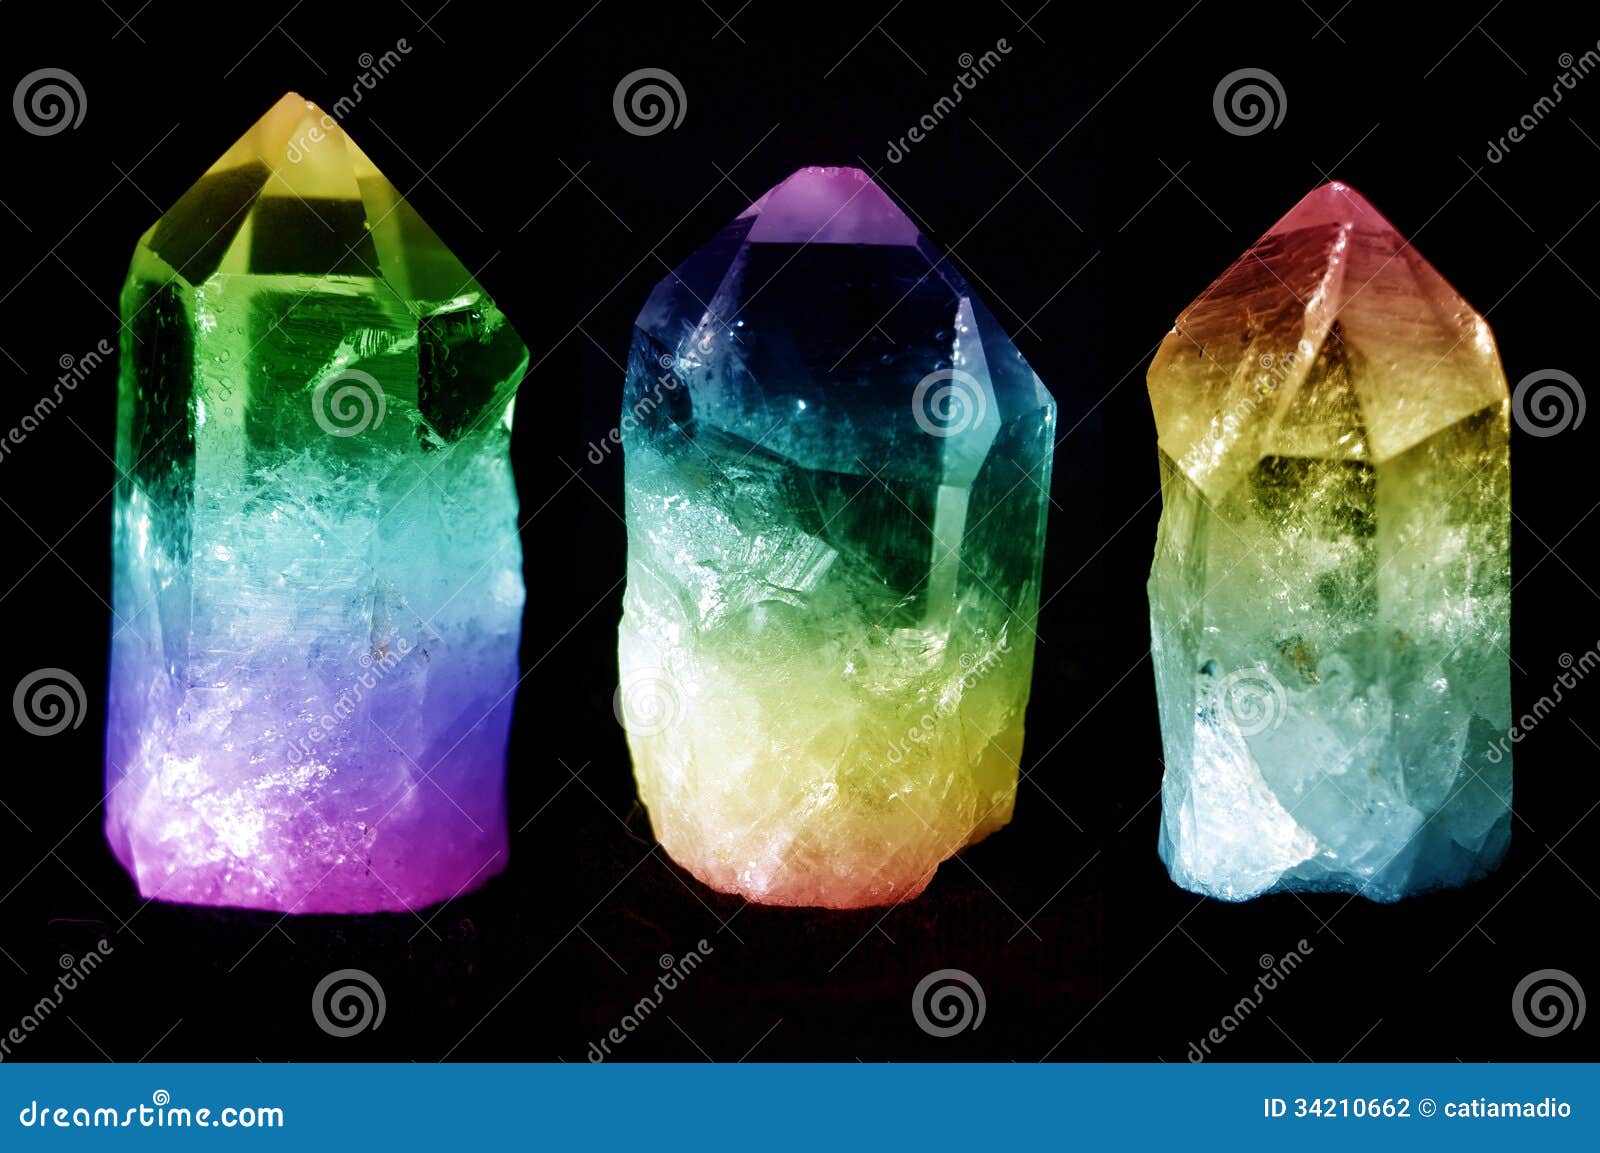 three quartz crystals